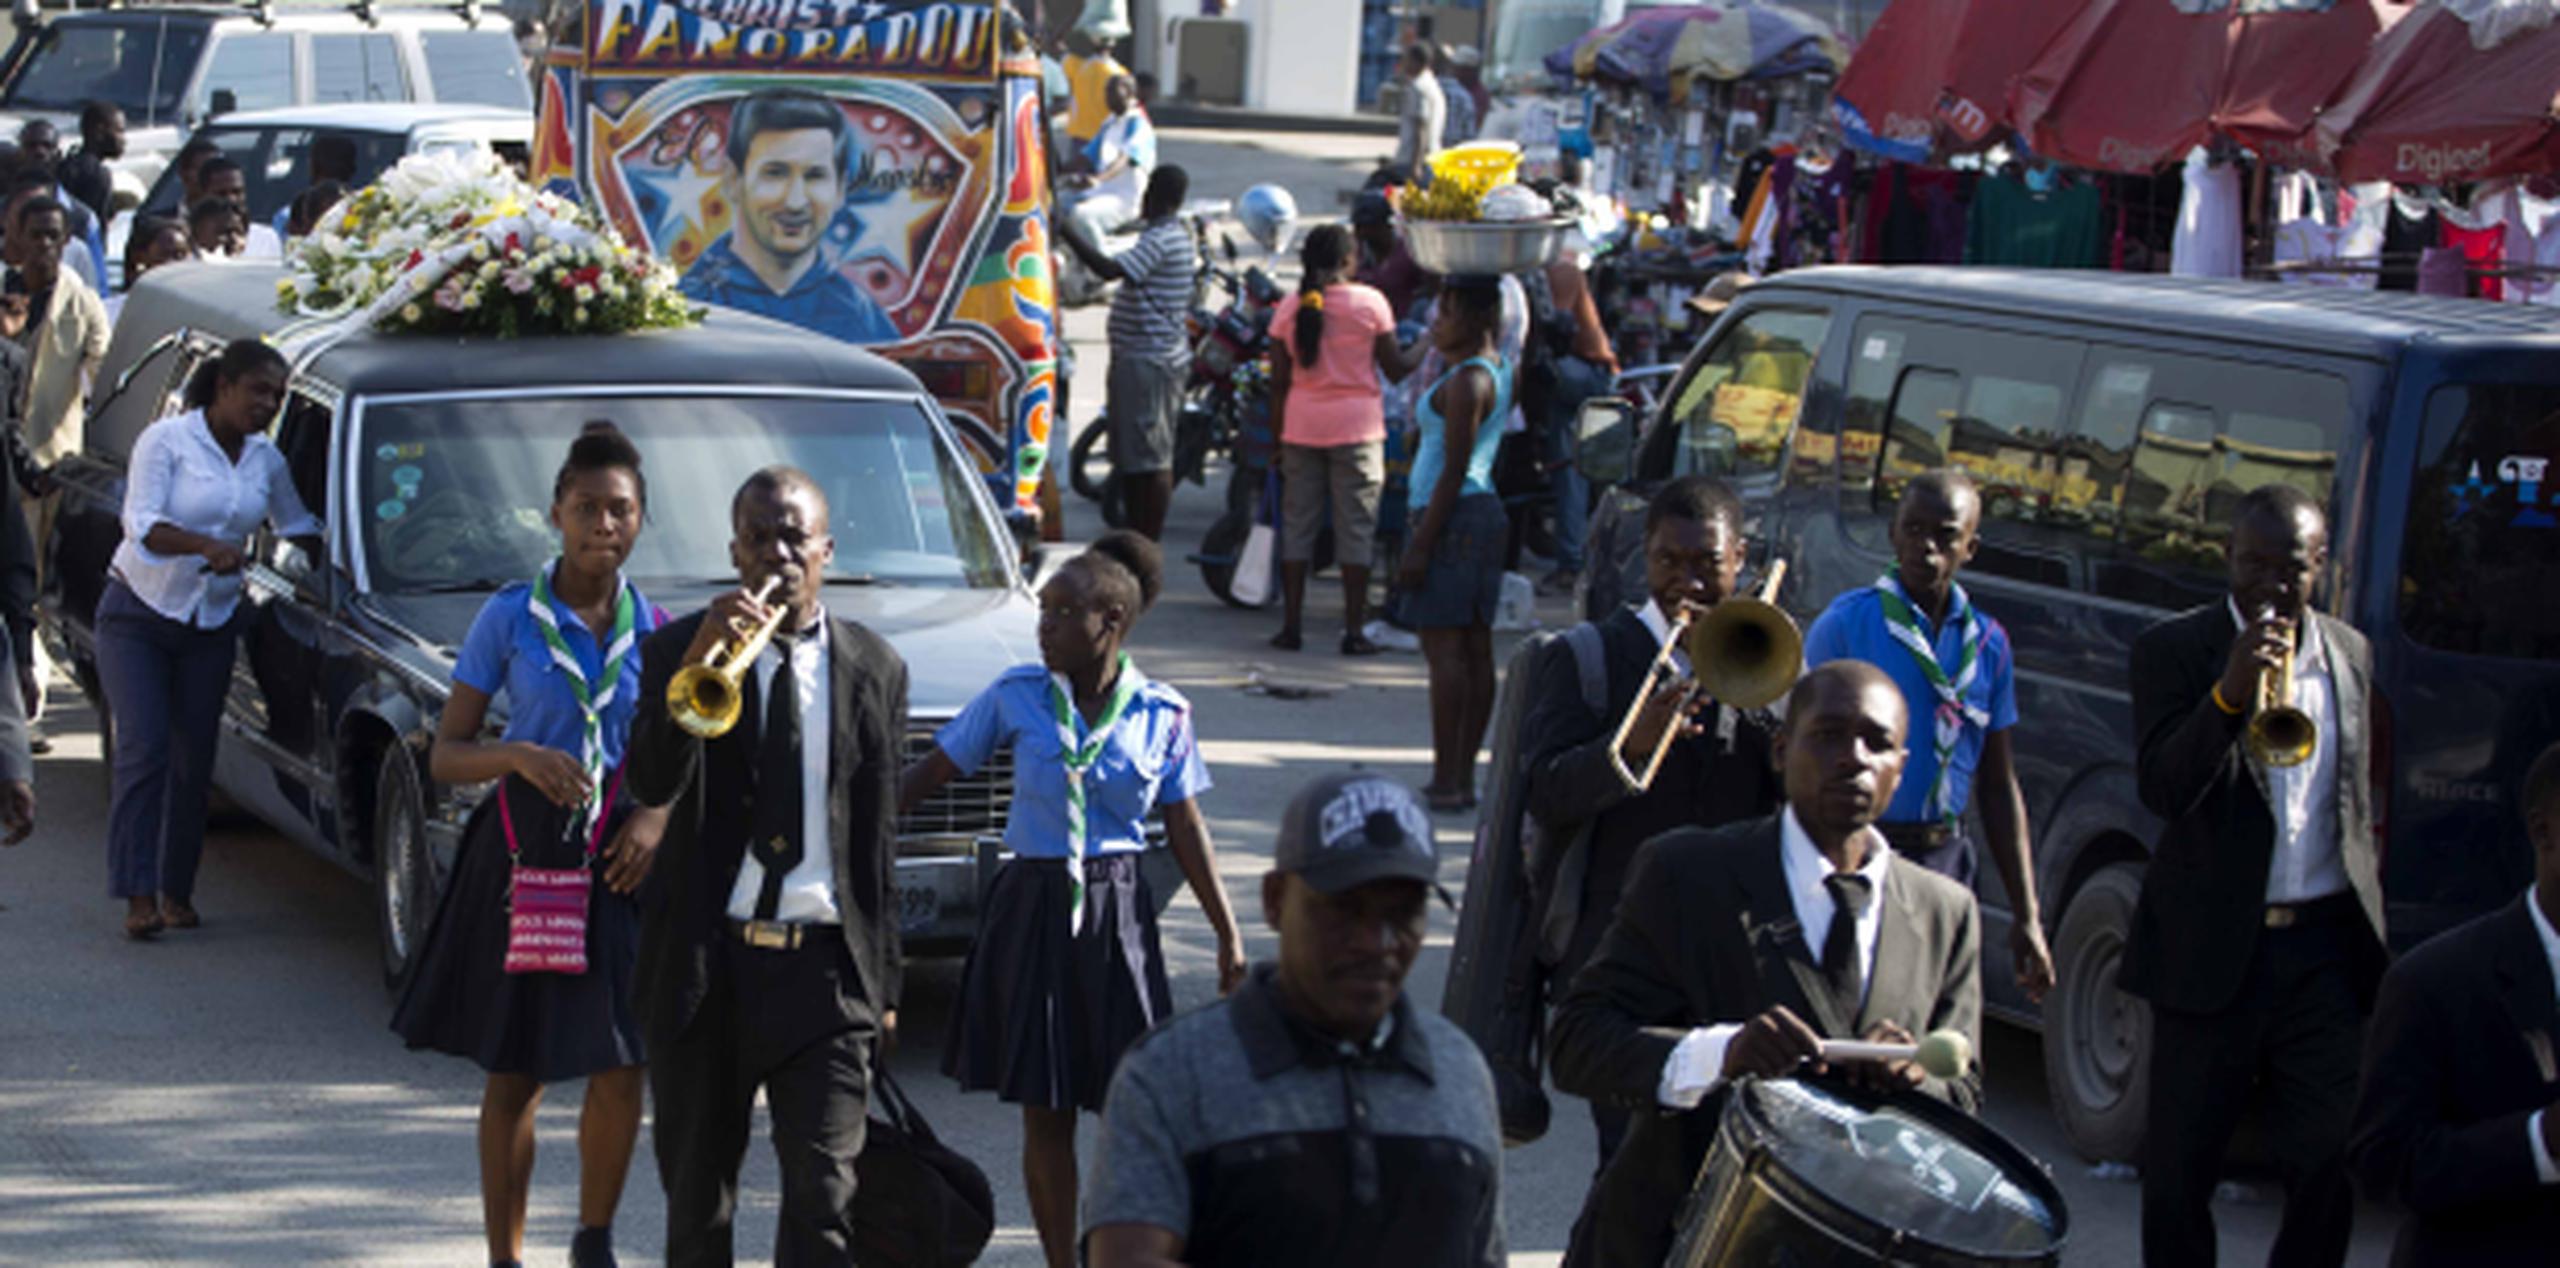 Bandas musicales, camarógrafos y lloronas son parte de la pompa que se ofrece en los funerales haitianos que mucha gente inetersa pagar, a pesar del elevado costo en comparación de su salario. (AP)